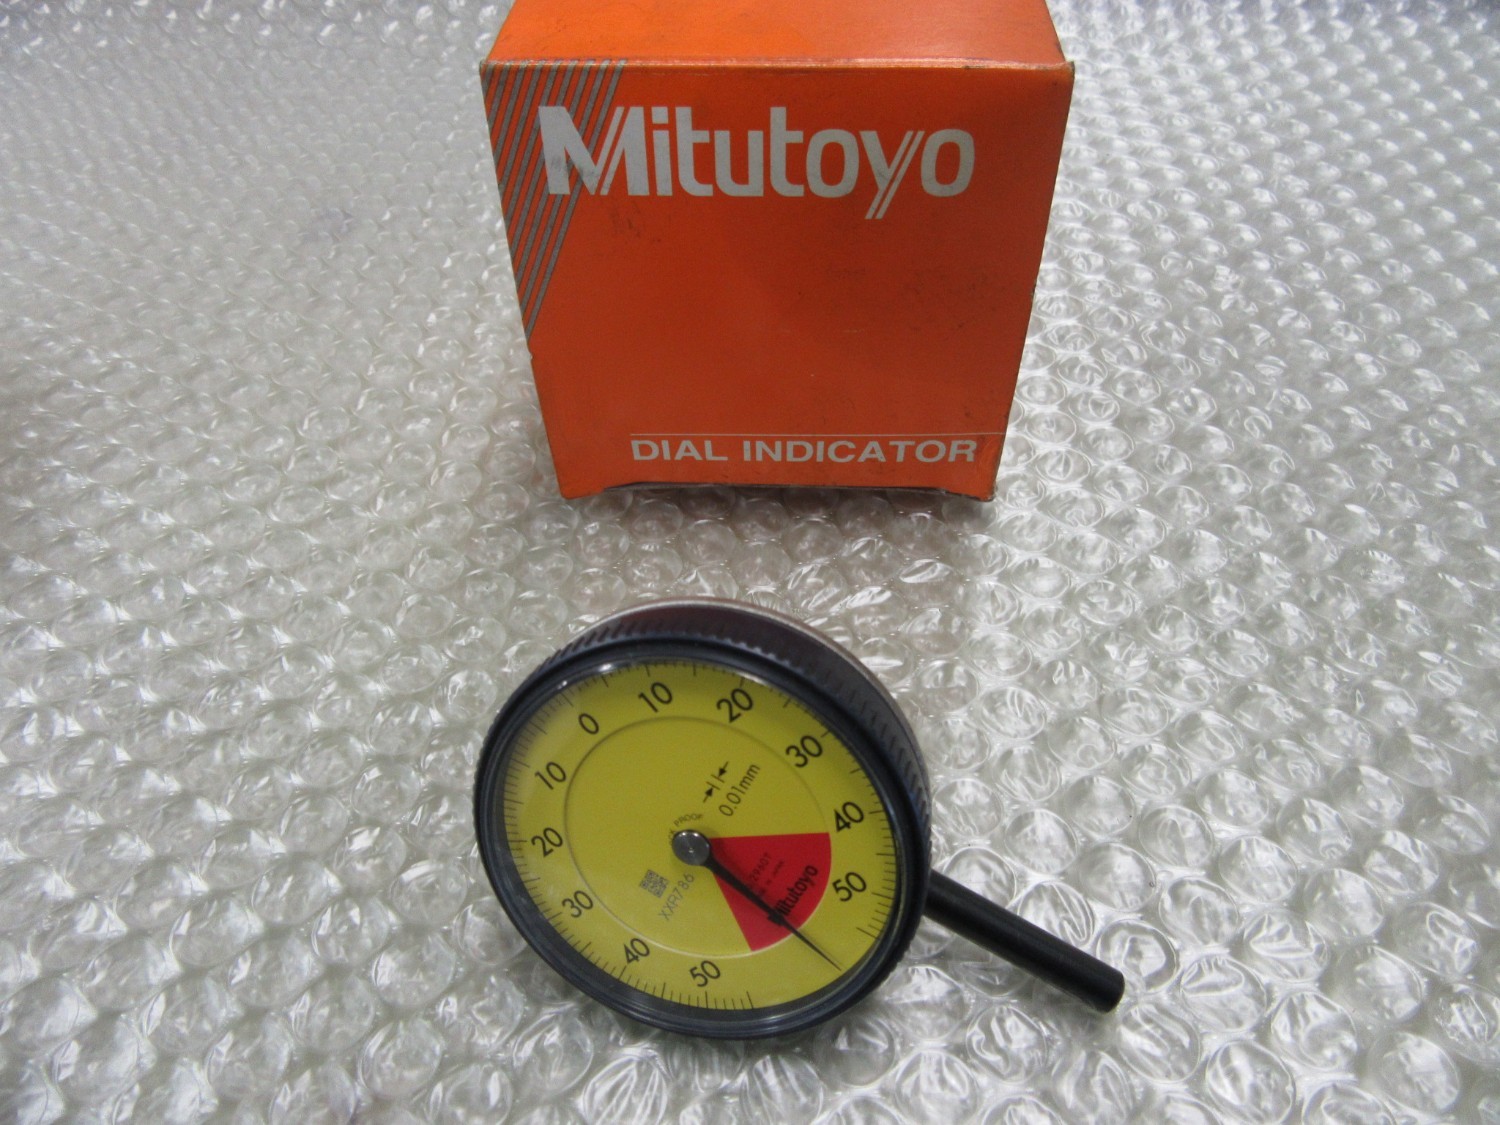 中古Dial gauge(Dial indicator) 【標準形ダイヤルゲージ】2960T(0.01mm) Mitutoyo 